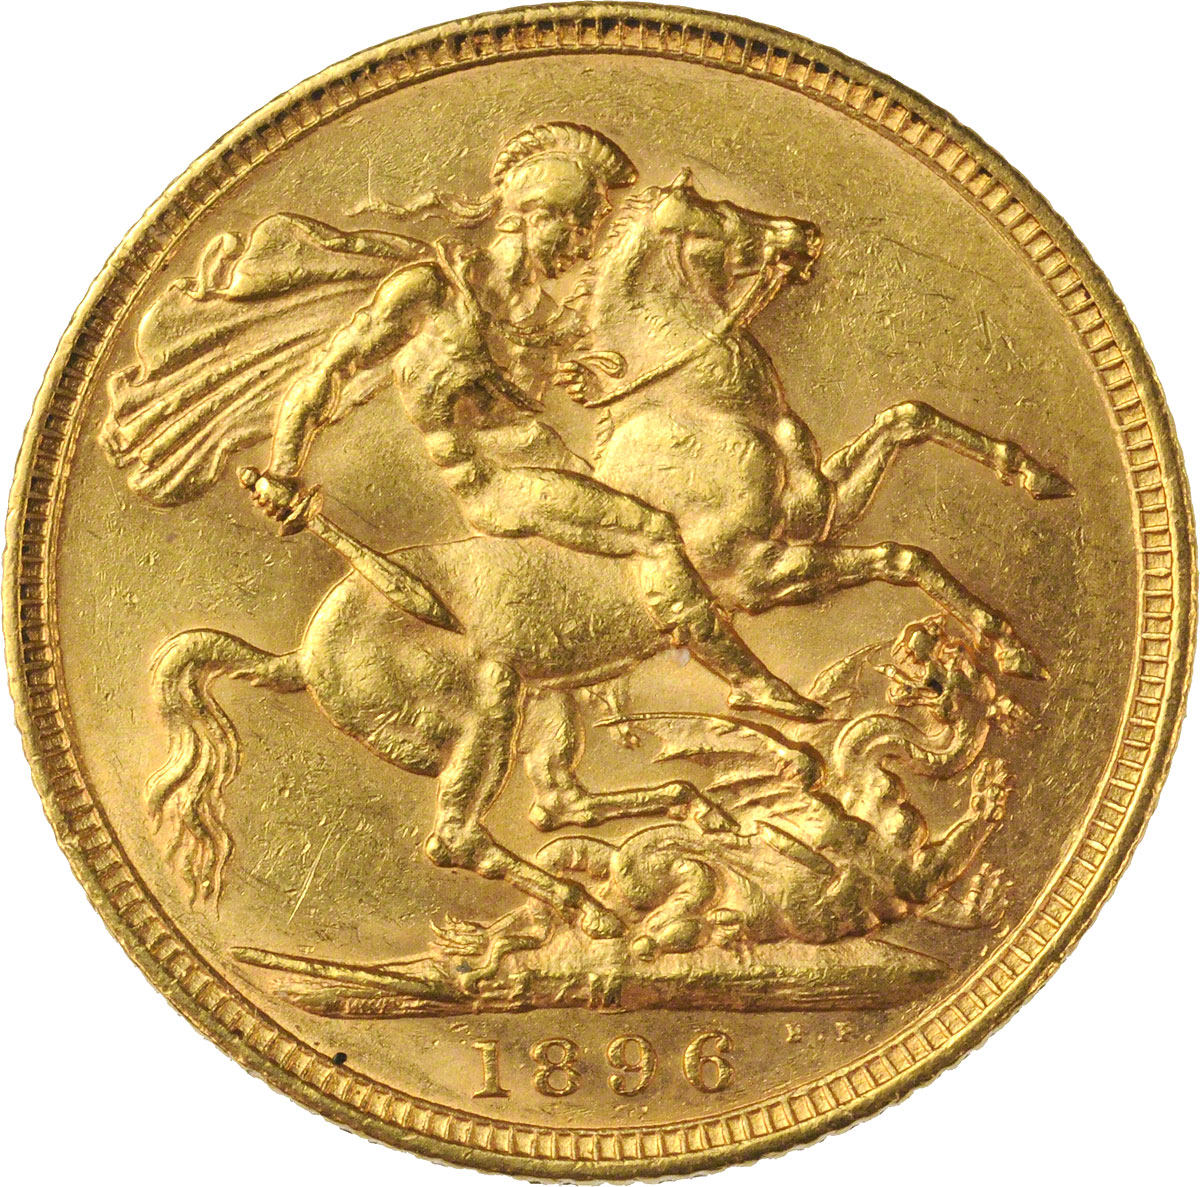 1896 Βικτώρια (Νομισματοκοπείο Μελβούρνης)